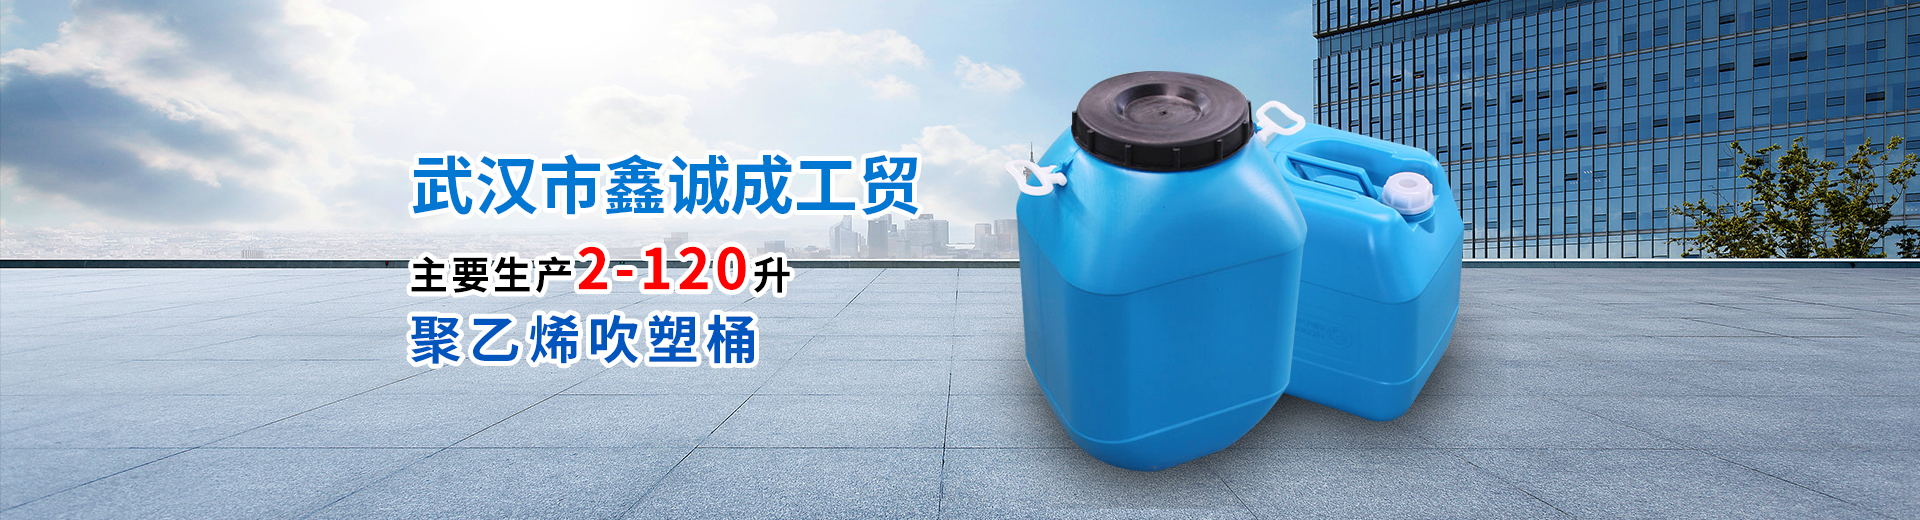 武汉塑料桶